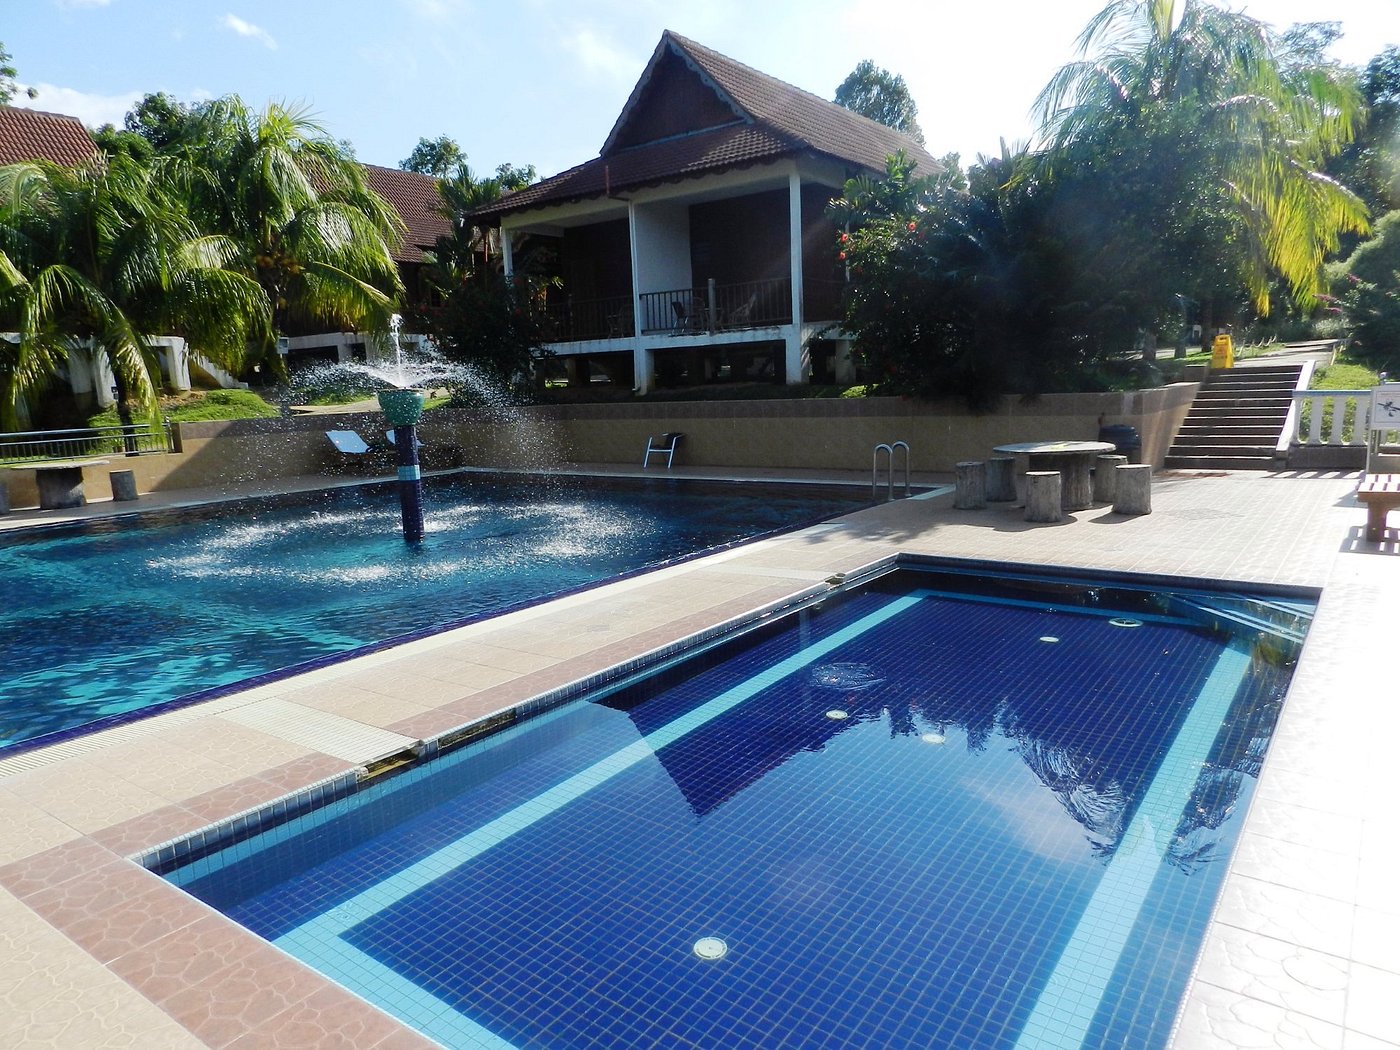 Xcape Resort Taman Negara Pool Pictures & Reviews - Tripadvisor